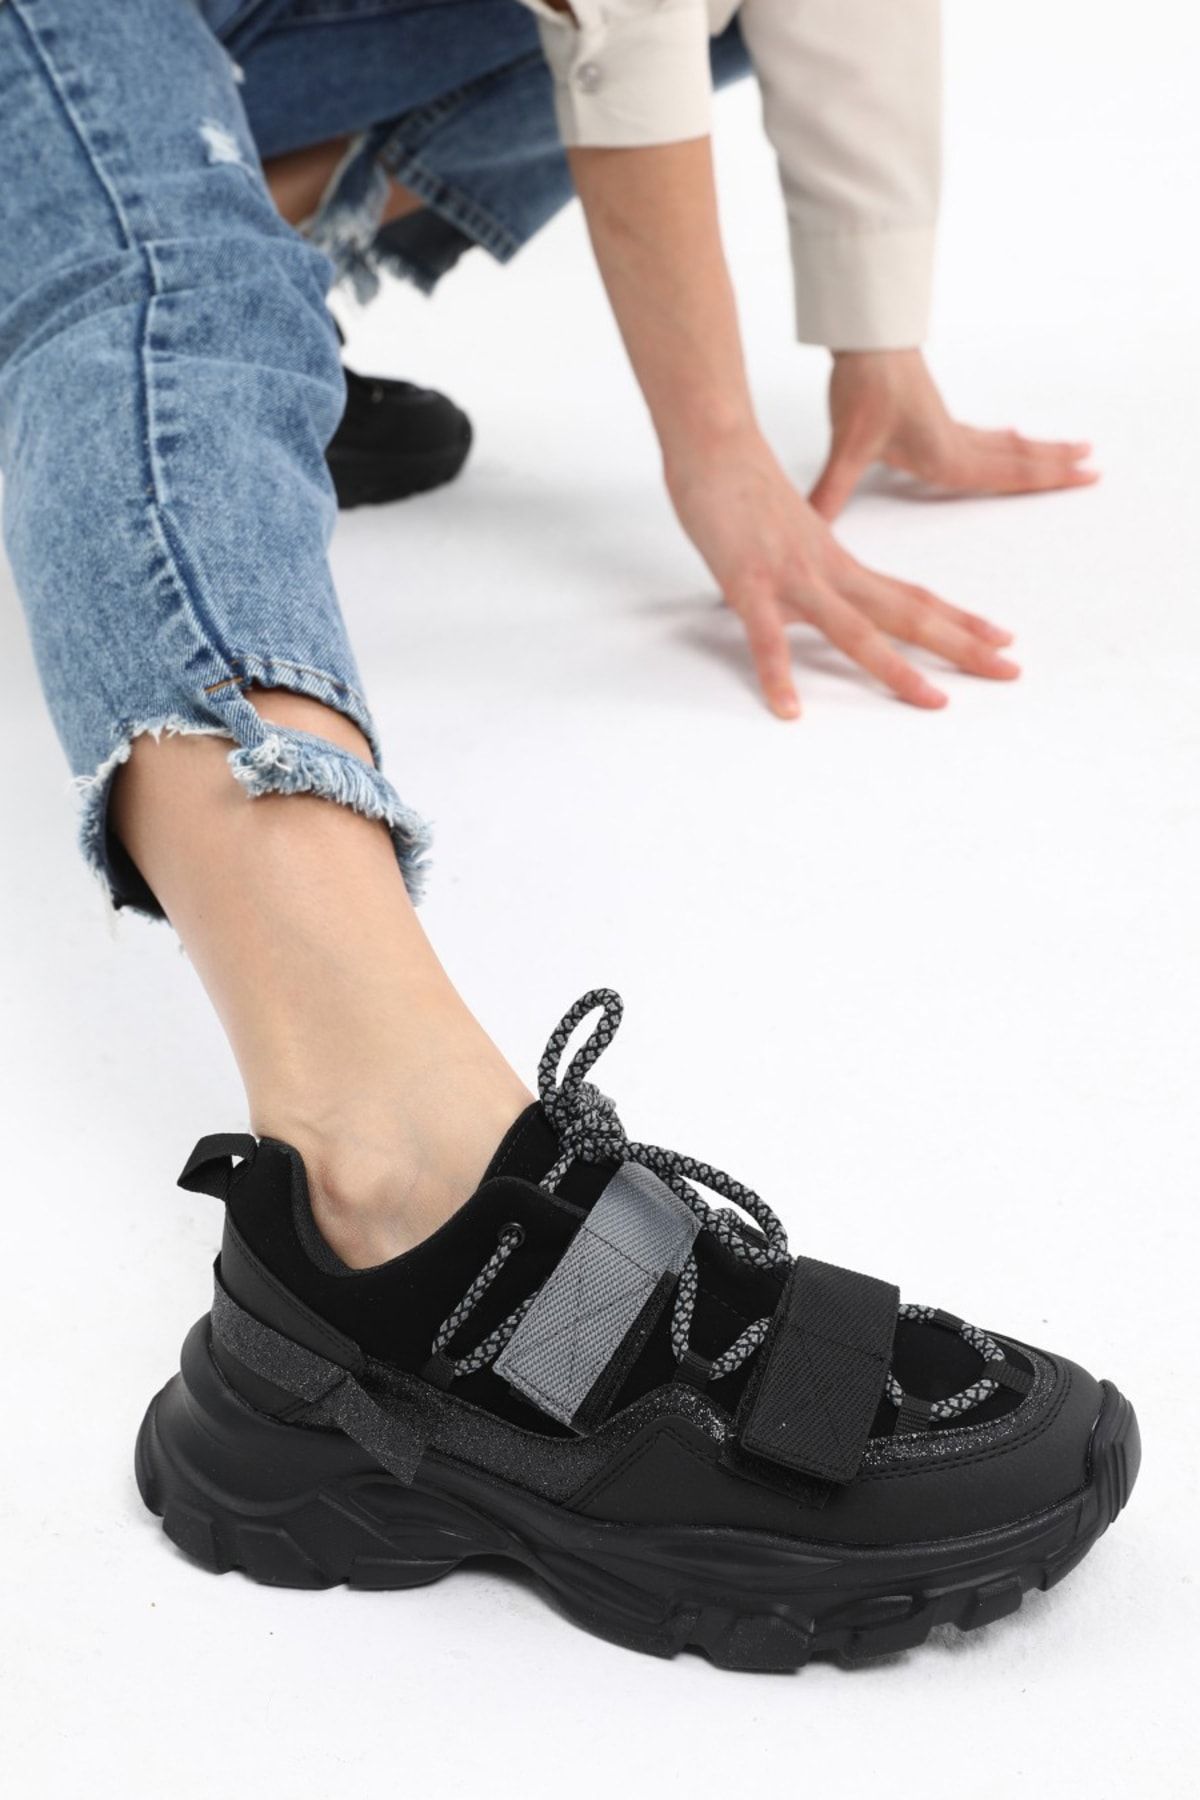 AVA Siyah Kadın Hafif Yürüyüş Sneaker Ayakkabı